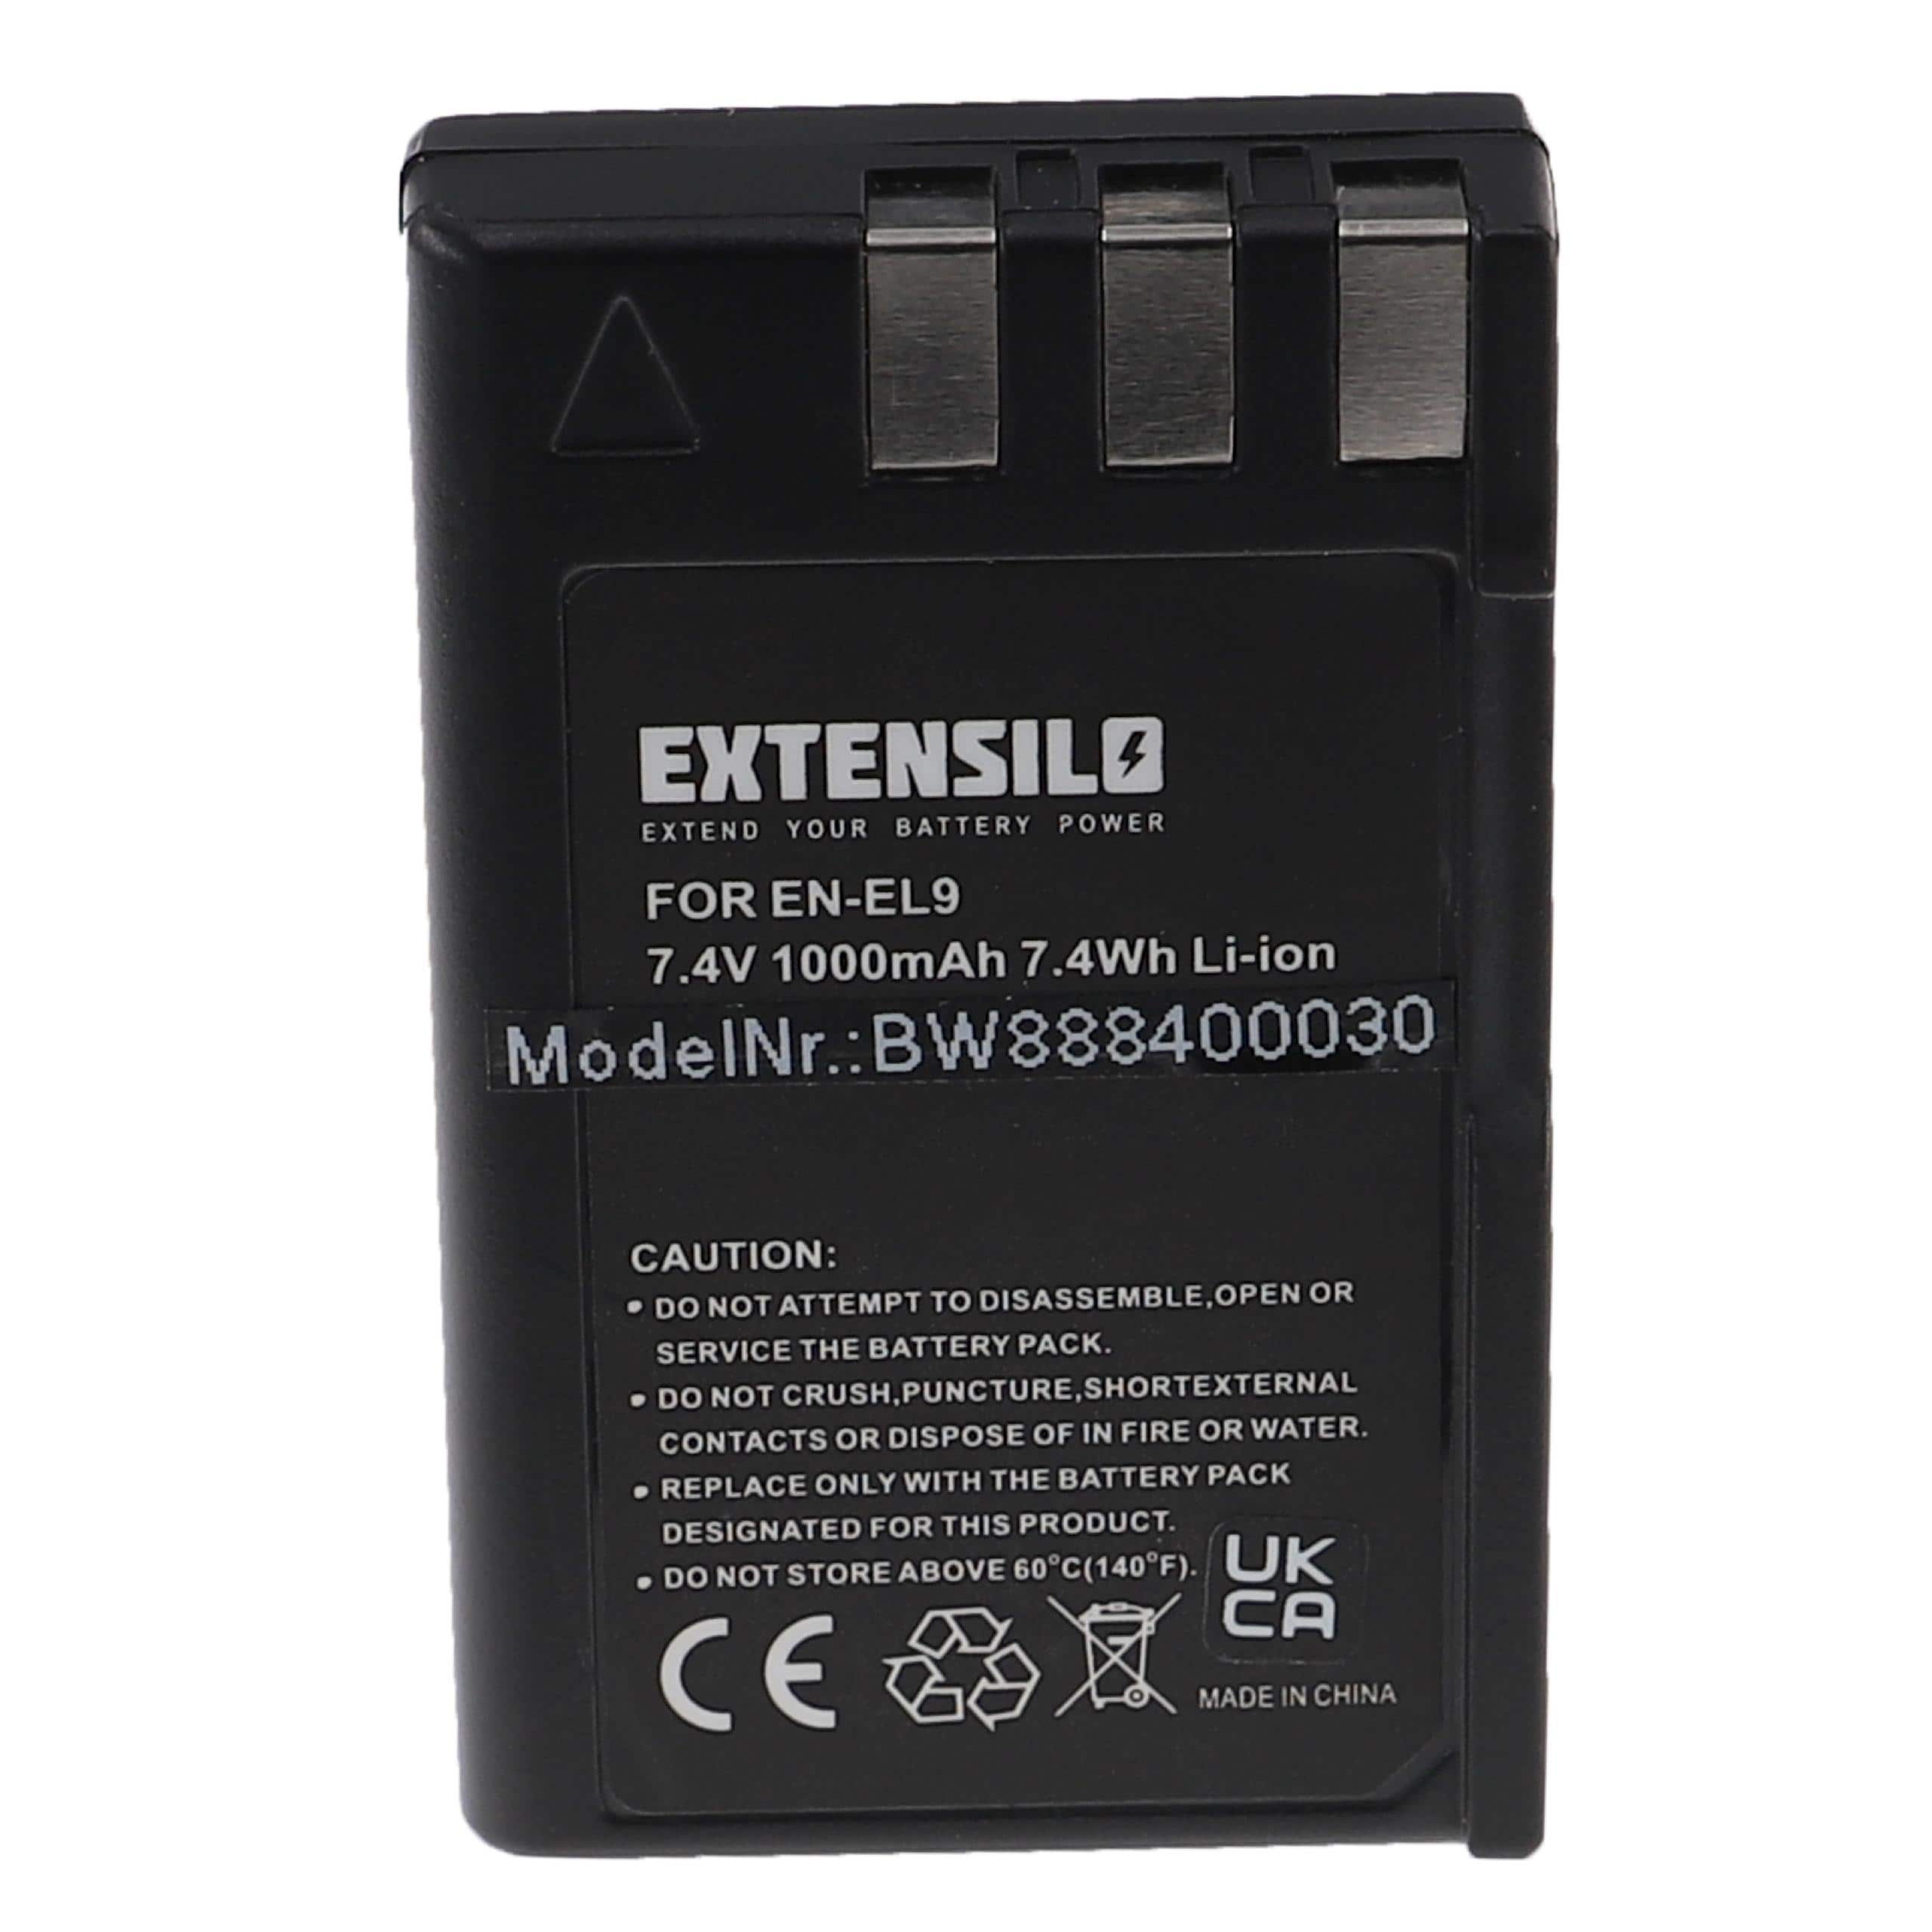 Battery Replacement for Nikon EN-EL9E, EN-EL9 - 1000mAh, 7.4V, Li-Ion